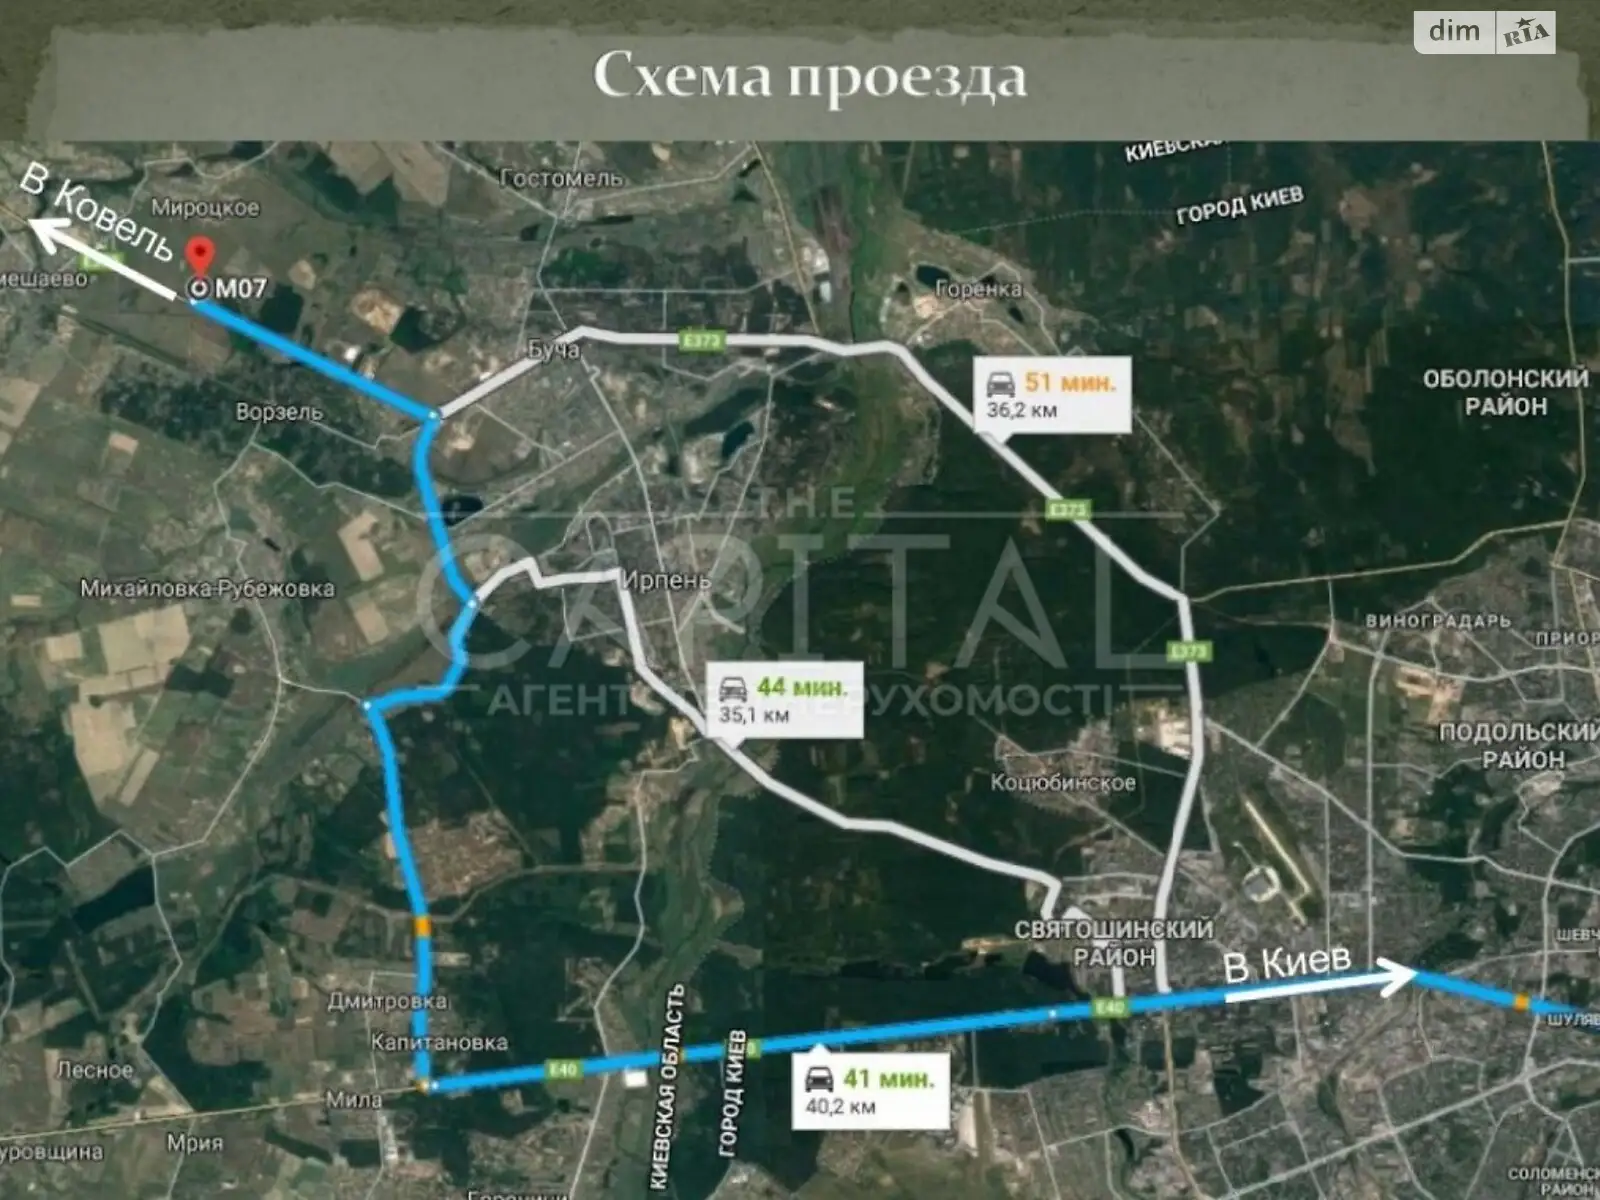 Продается земельный участок 1200310 соток в Киевской области, цена: 1200310 $